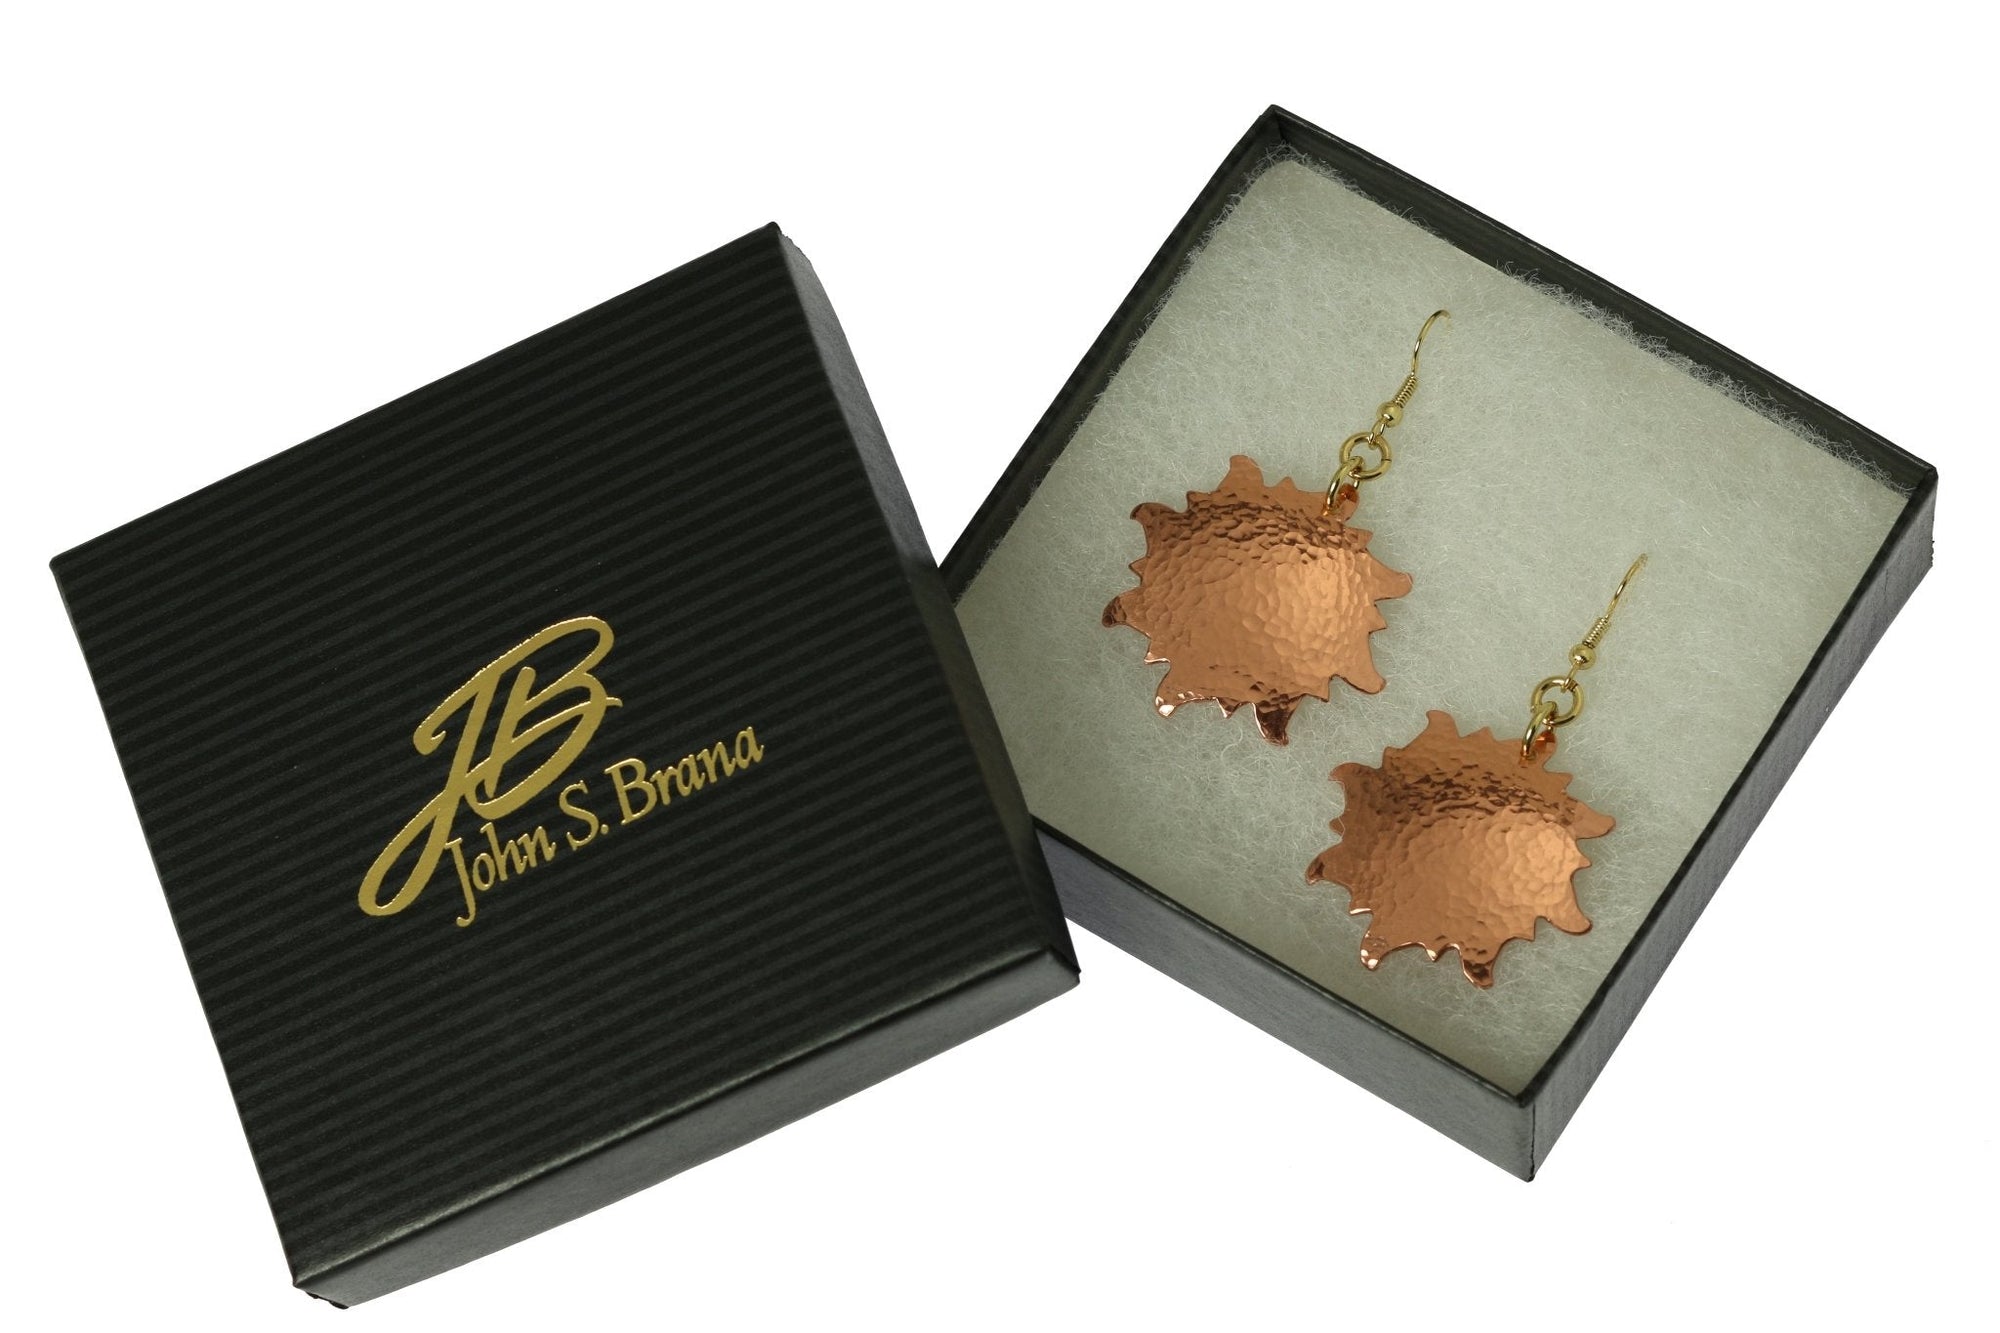 Hammered Copper Sunburst Earrings in Gift Box